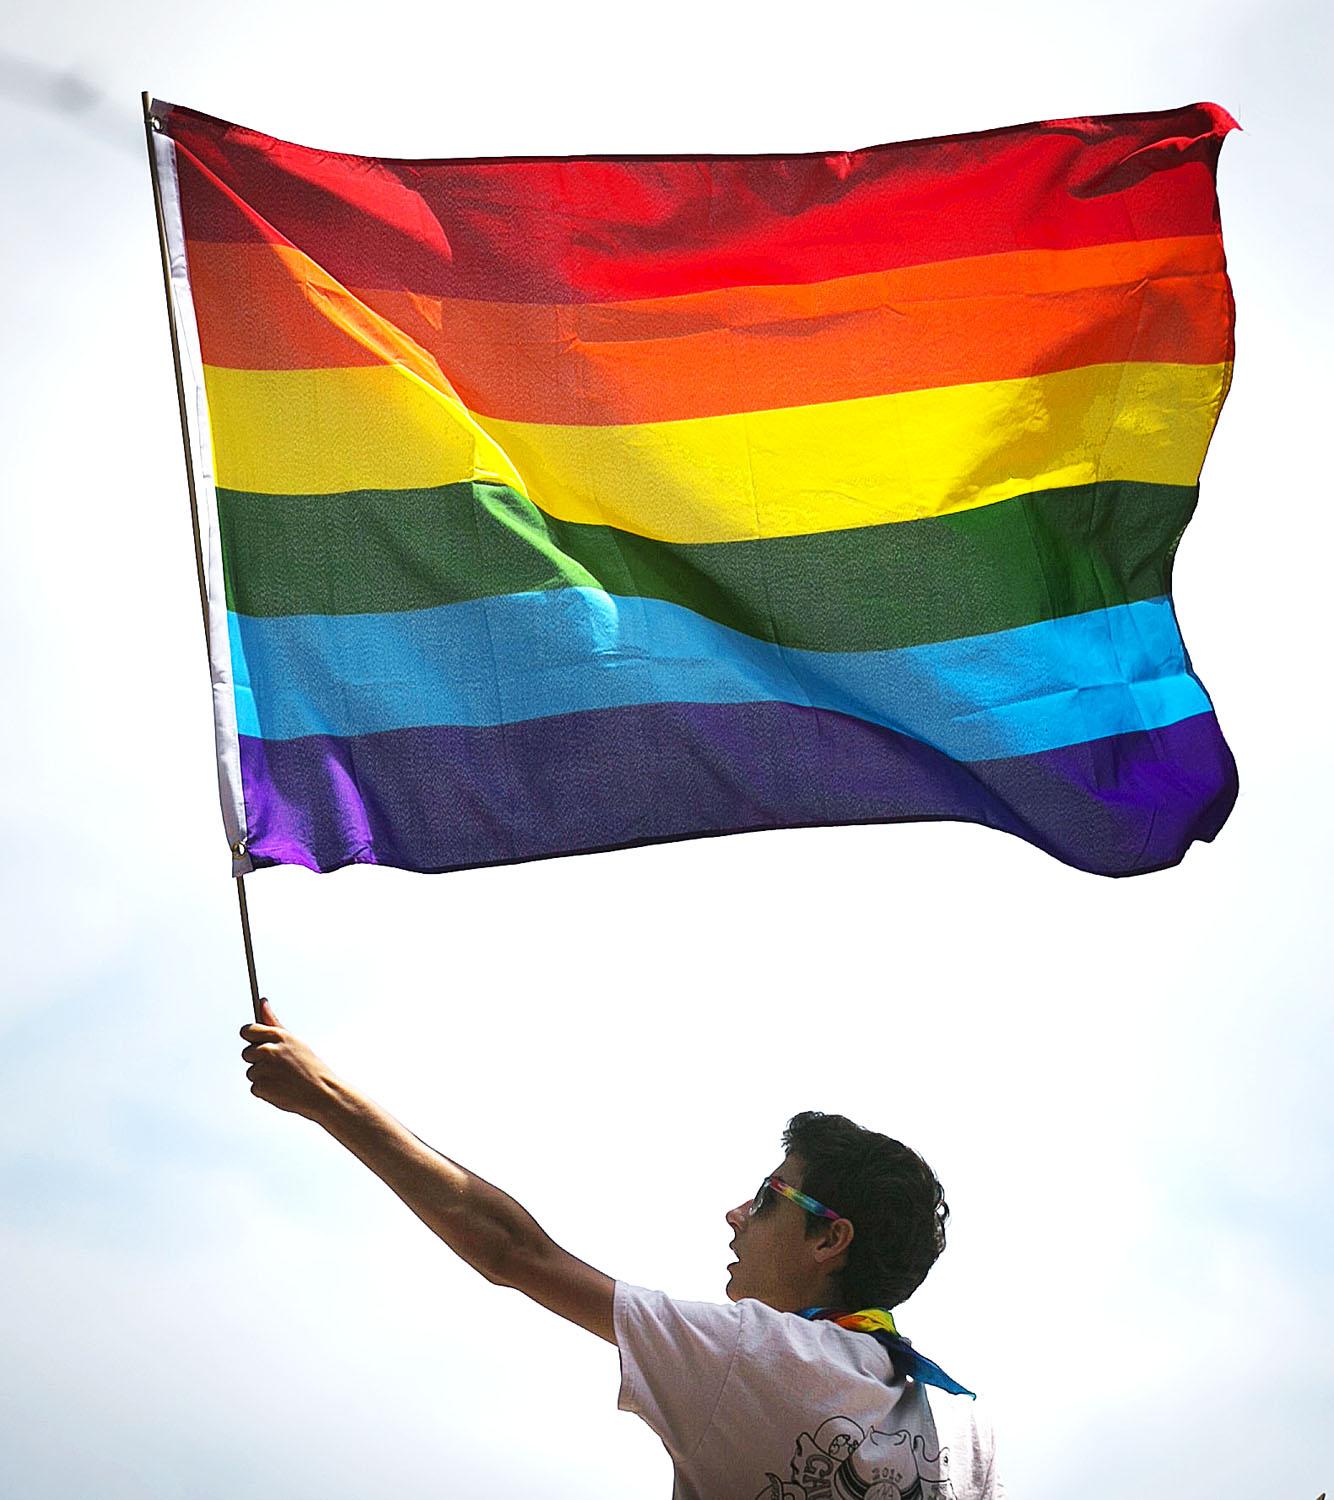 Elegük van abból, hogy Magyarország nem tart sehová, a homofóbia mindennapossá vált